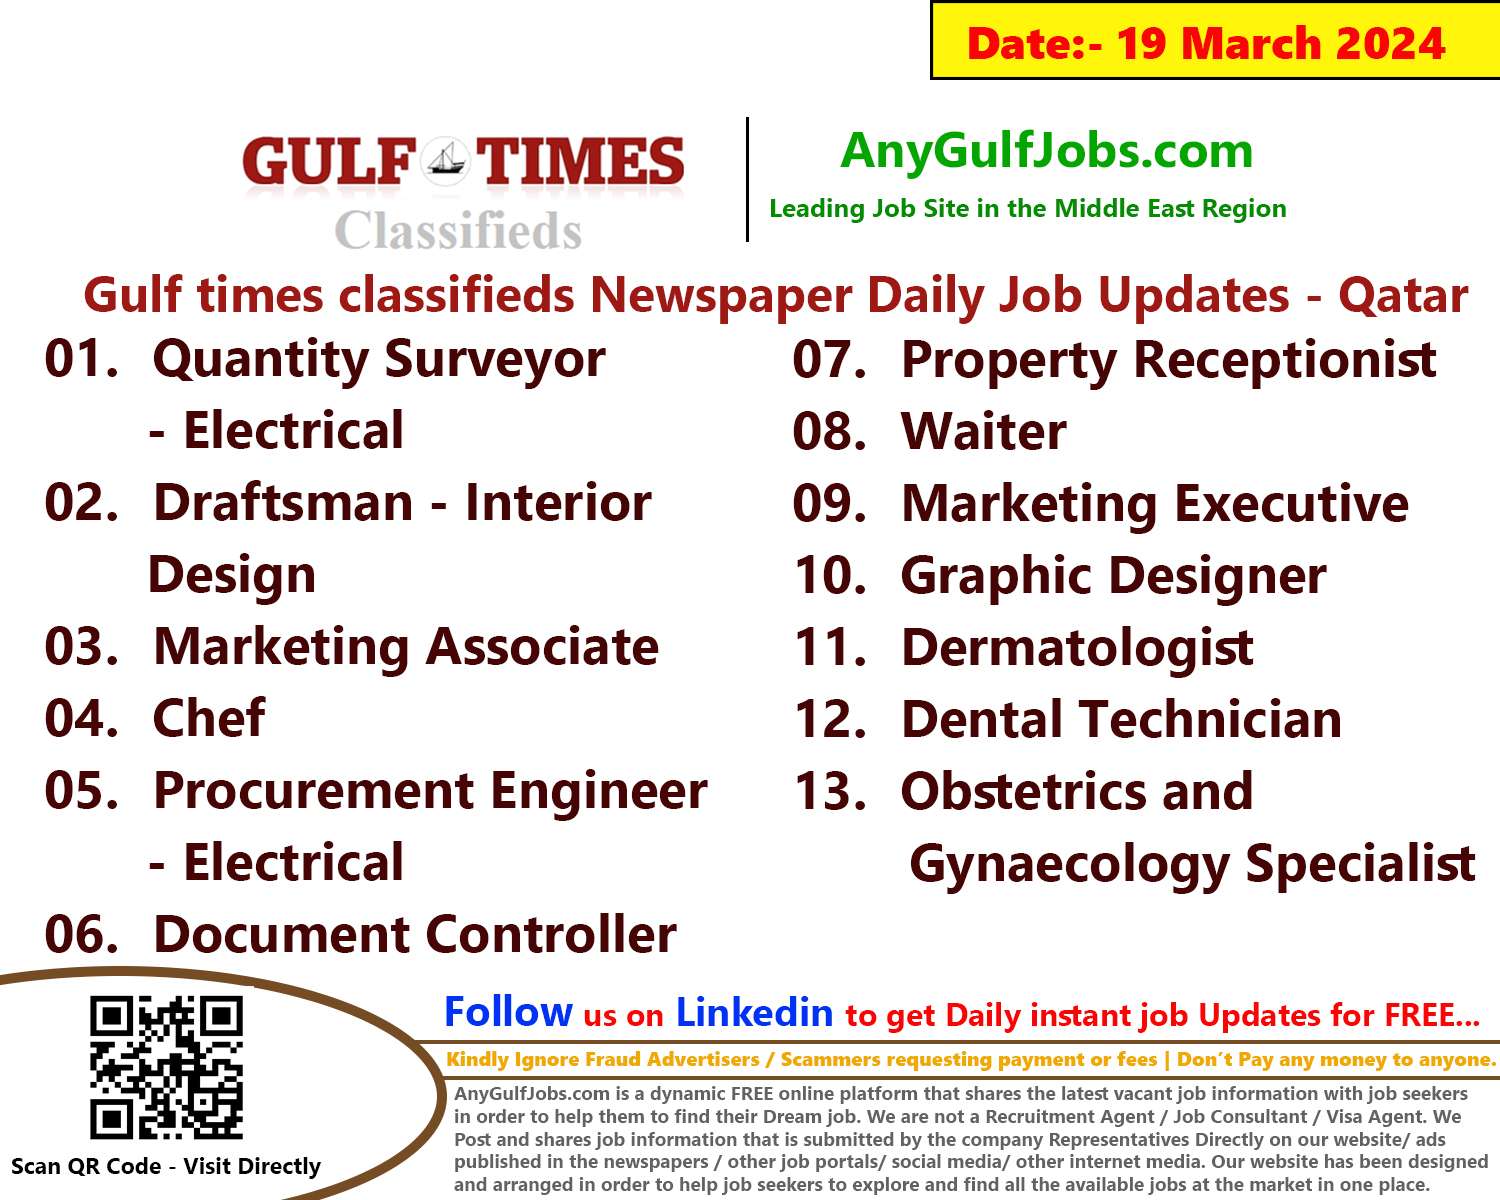 Gulf Times Classifieds Job Vacancies Qatar - 19 March 2024